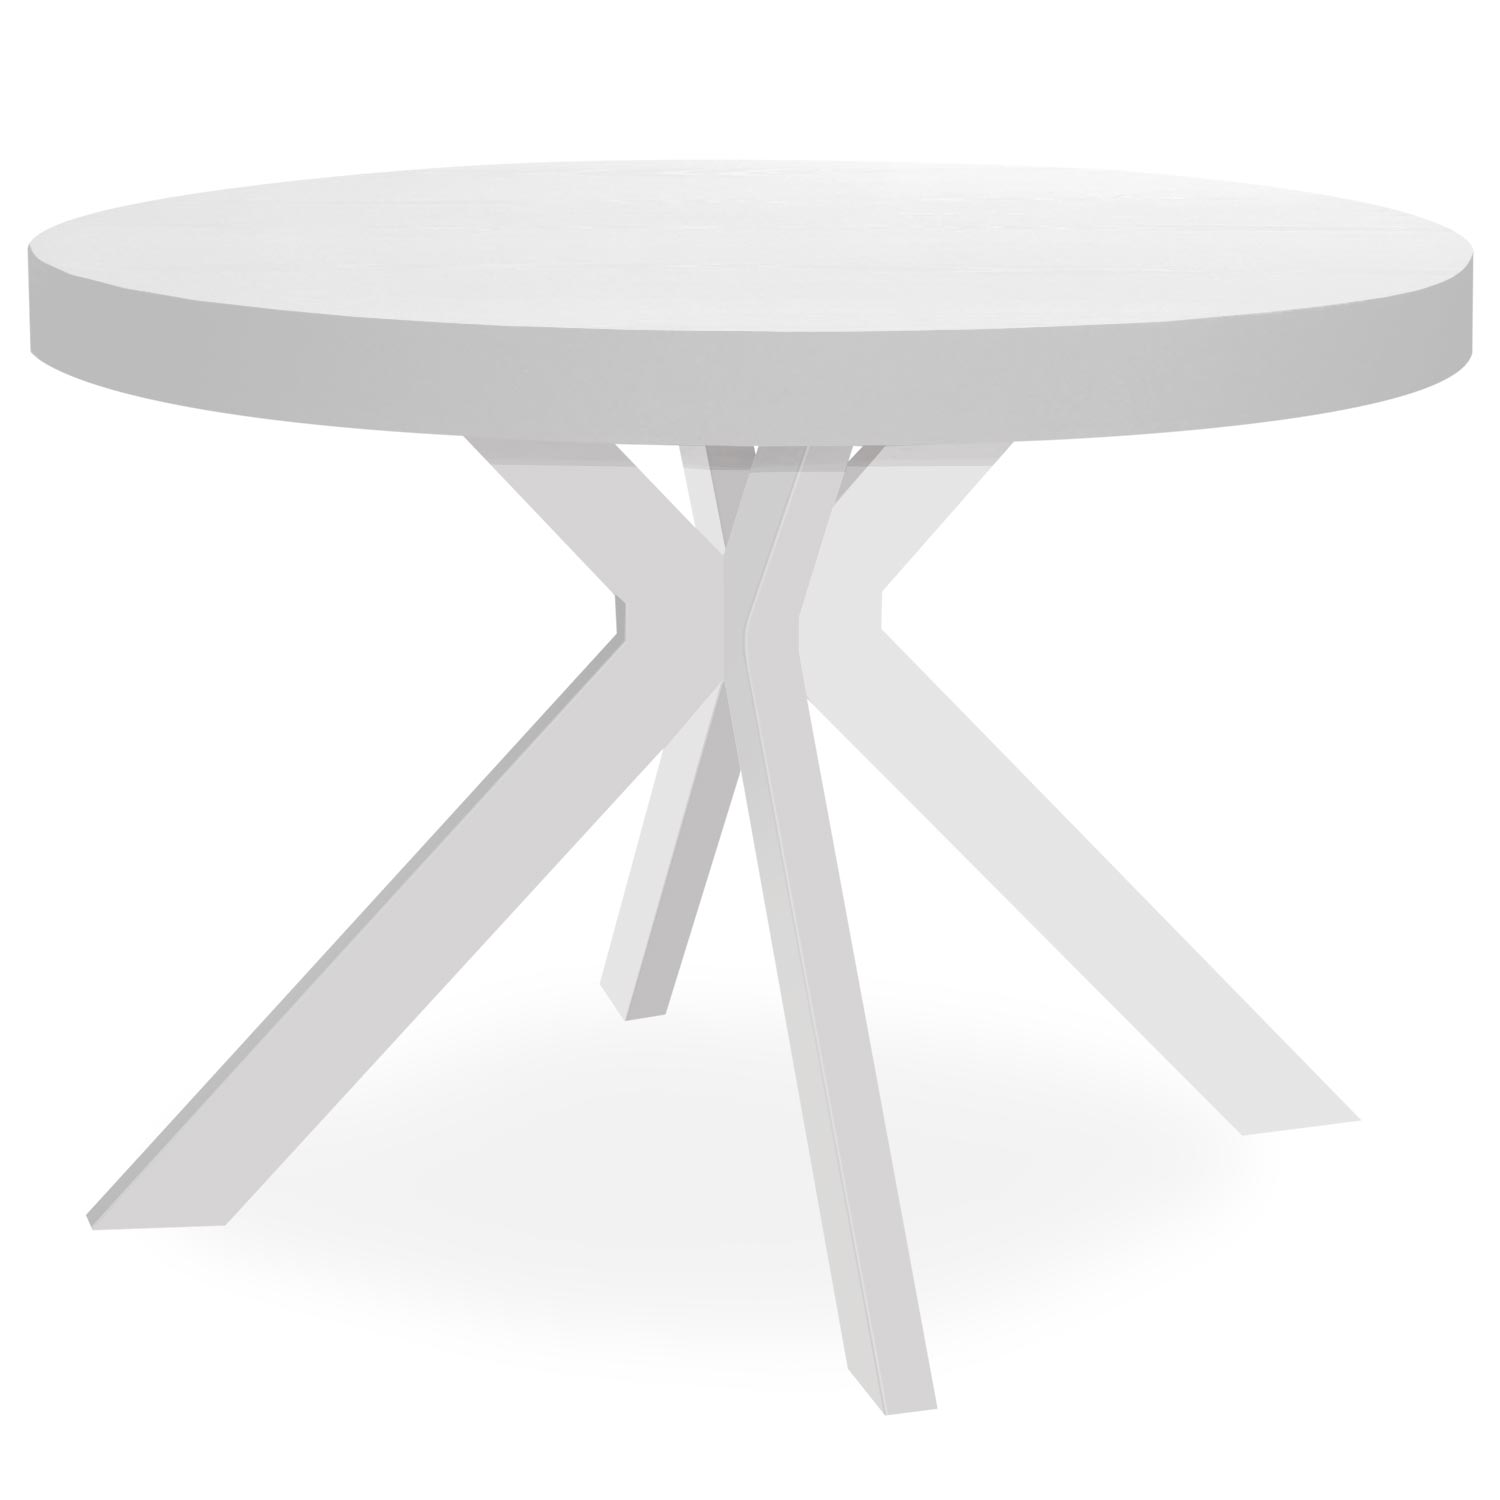 Myriade ausziehbarer runder Tisch Weiß